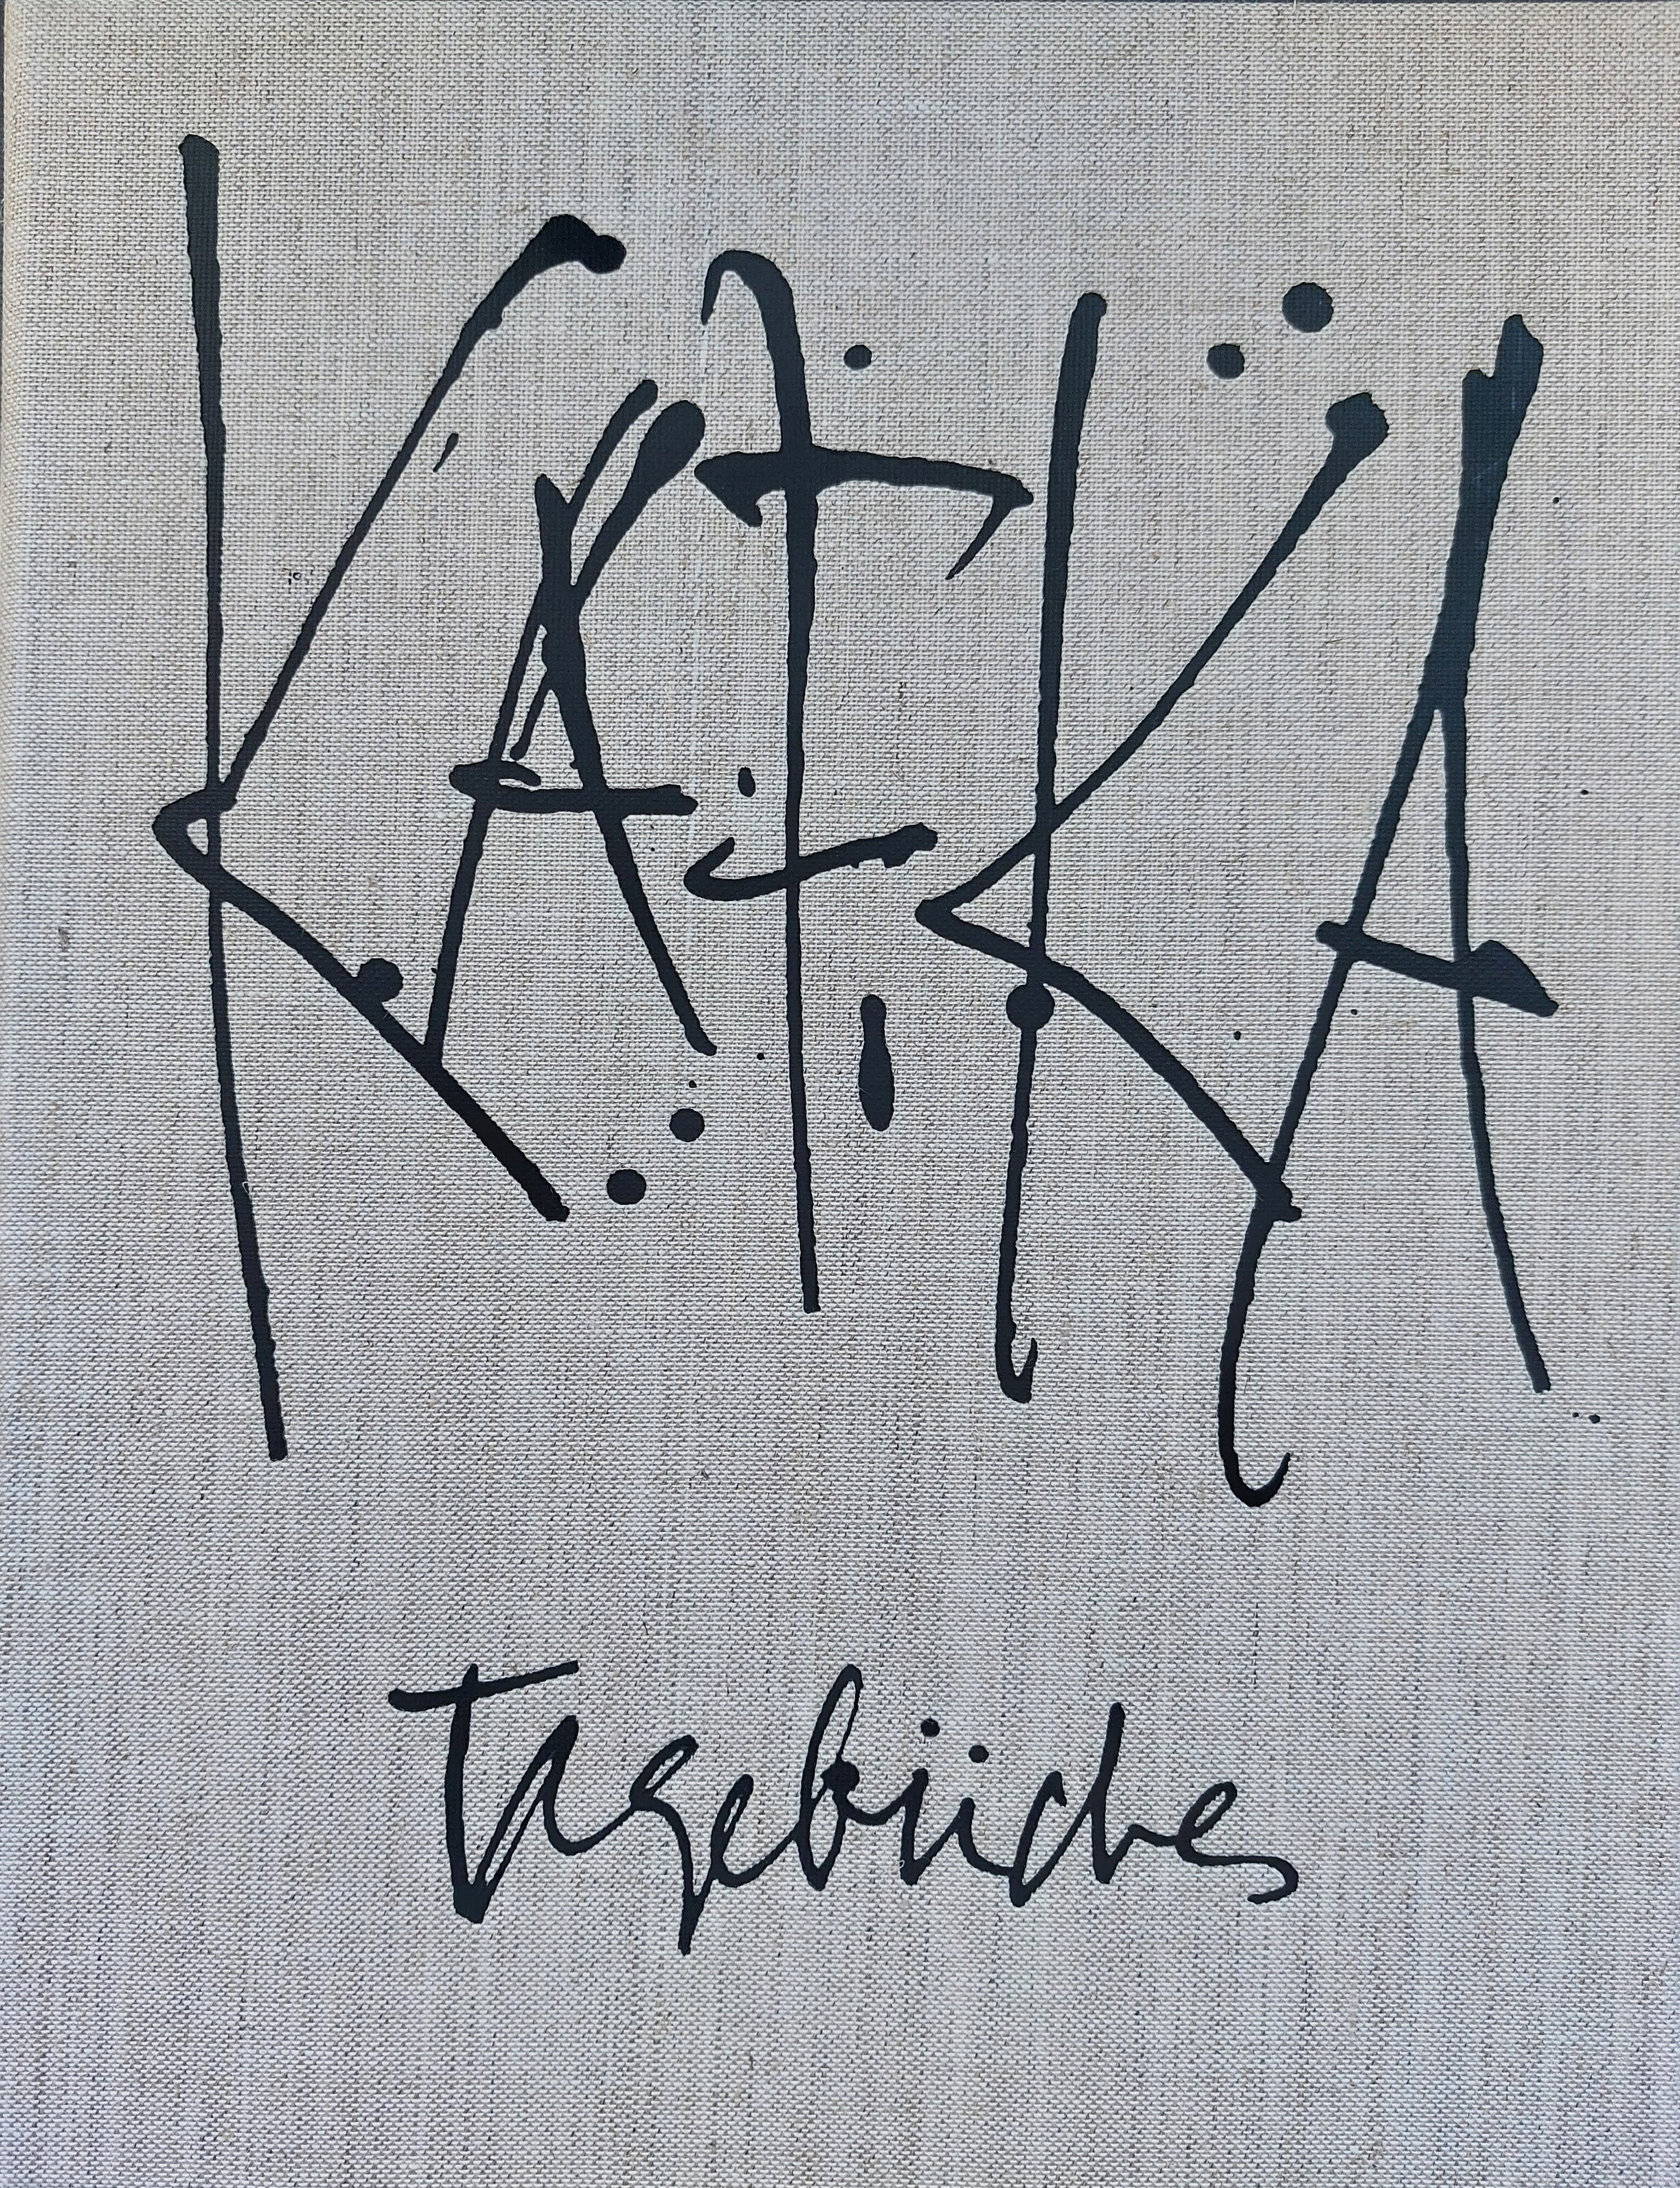 Antonio SAURA. Diarios de Kafka (Tagebücher), 1988. Libro de artista